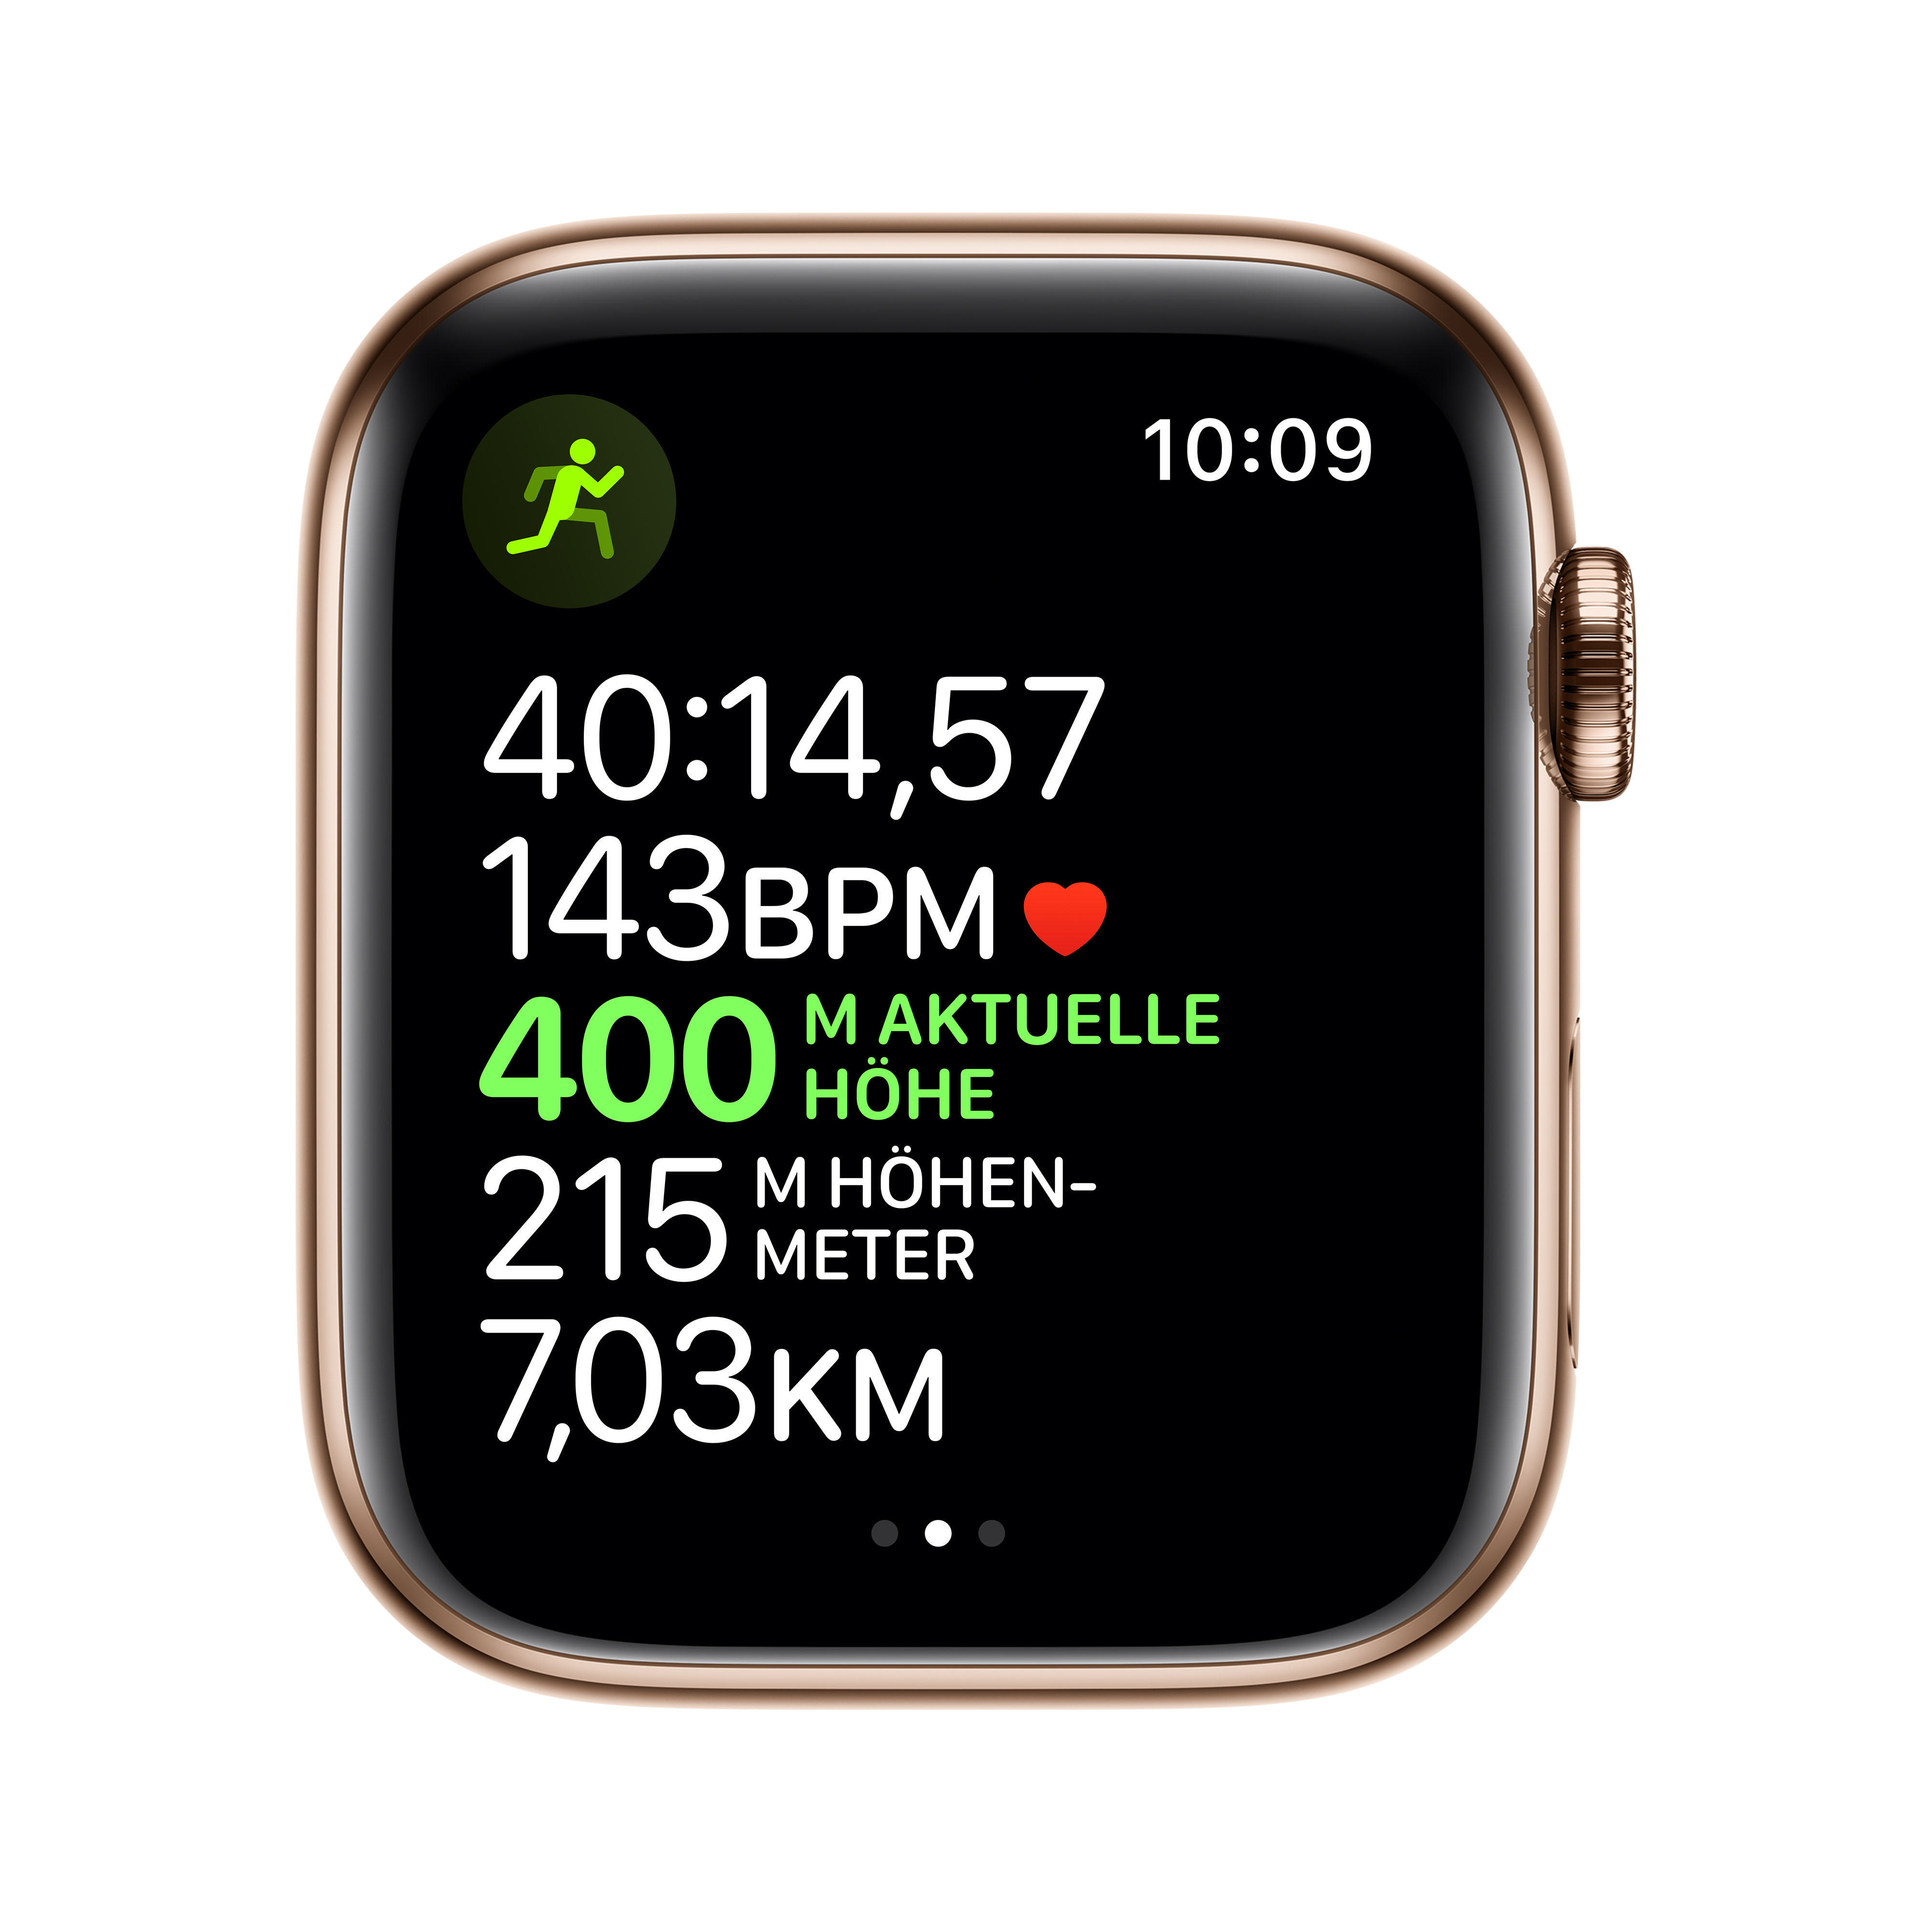 APPLE Watch (GPS Edelstahl Milanaise, Smartwatch Cellular) - Gold , Edelstahl Armband: 5 140 200 Gold Edelstahl, mm 44mm + Series Gehäuse